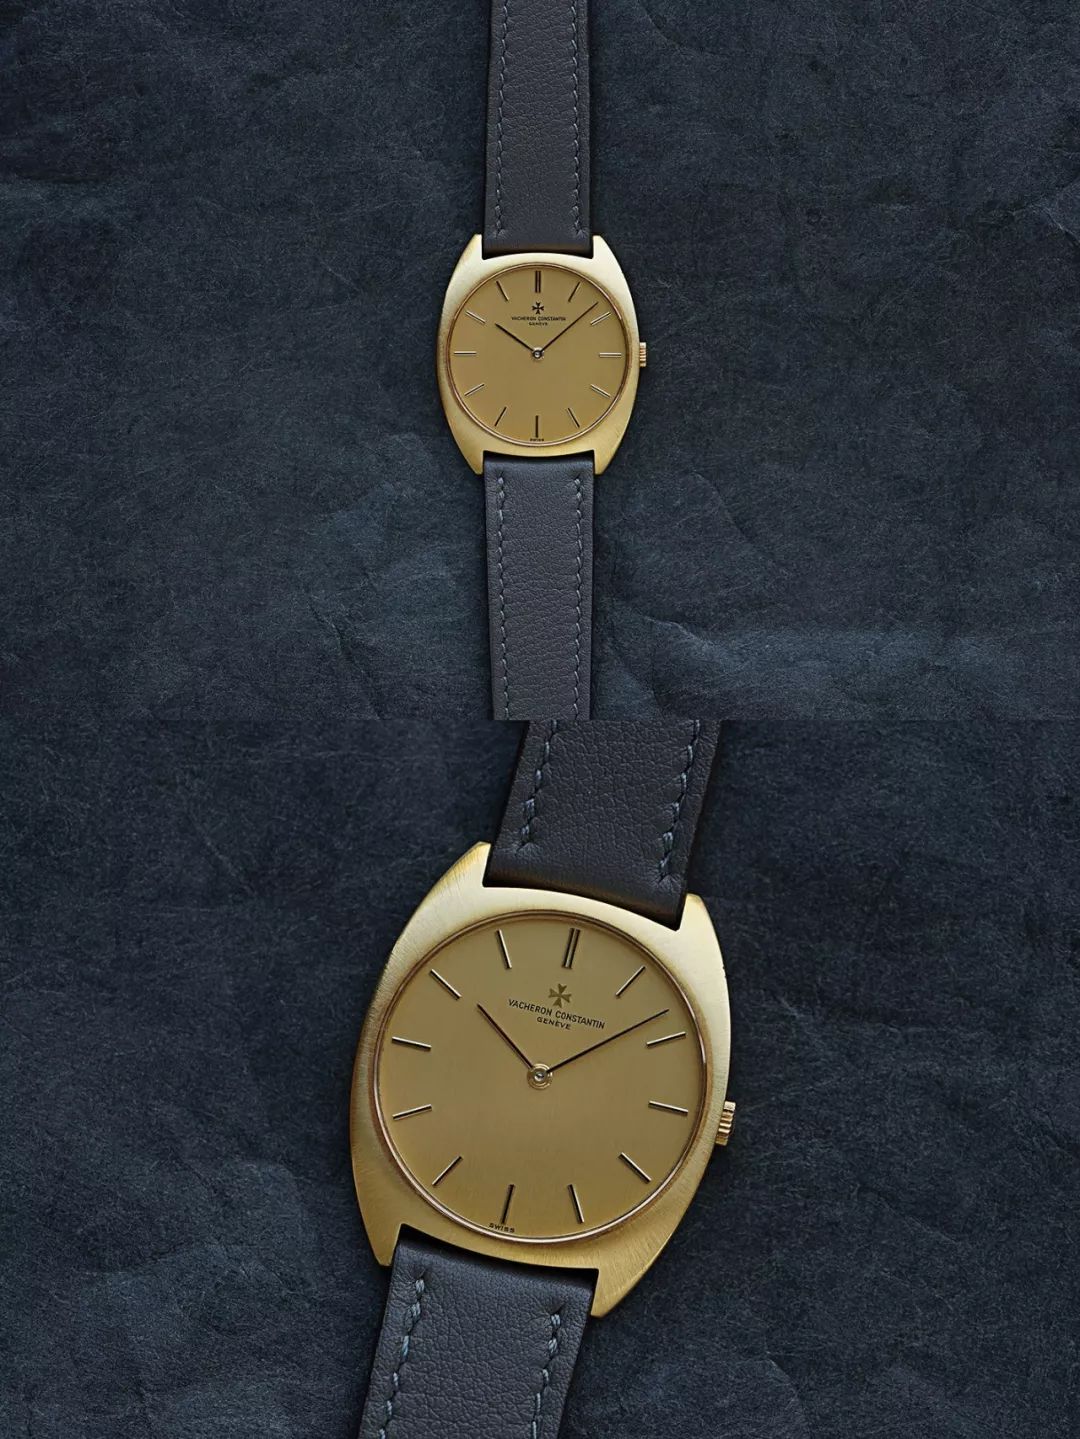 六十年代的江诗丹顿黄金腕表